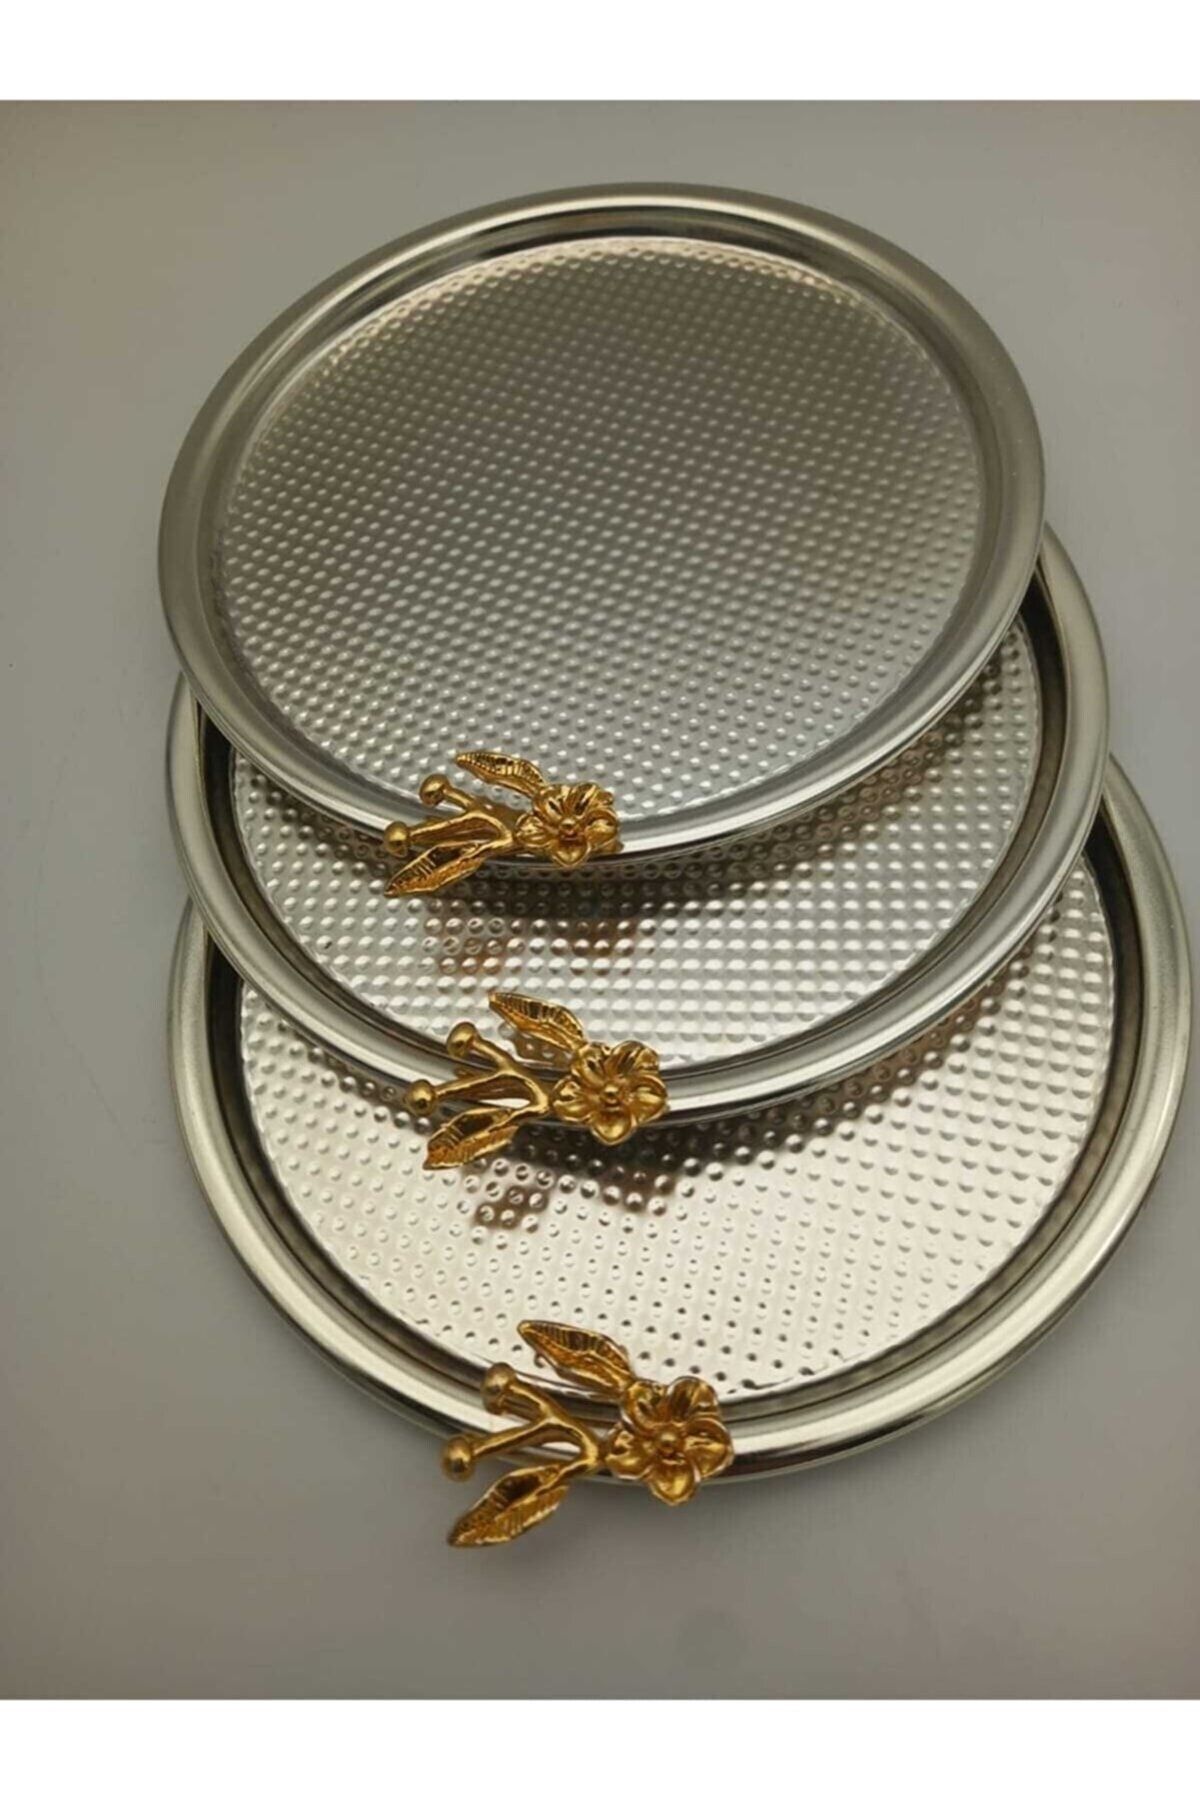 Fiyakalı Ürünler Atölyesi 3'lü Japon Güllü Yuvarlak Krem Sunum Tepsisi, Pasta Çay Kahve Dekoratif Servis Tepsisi 22cm